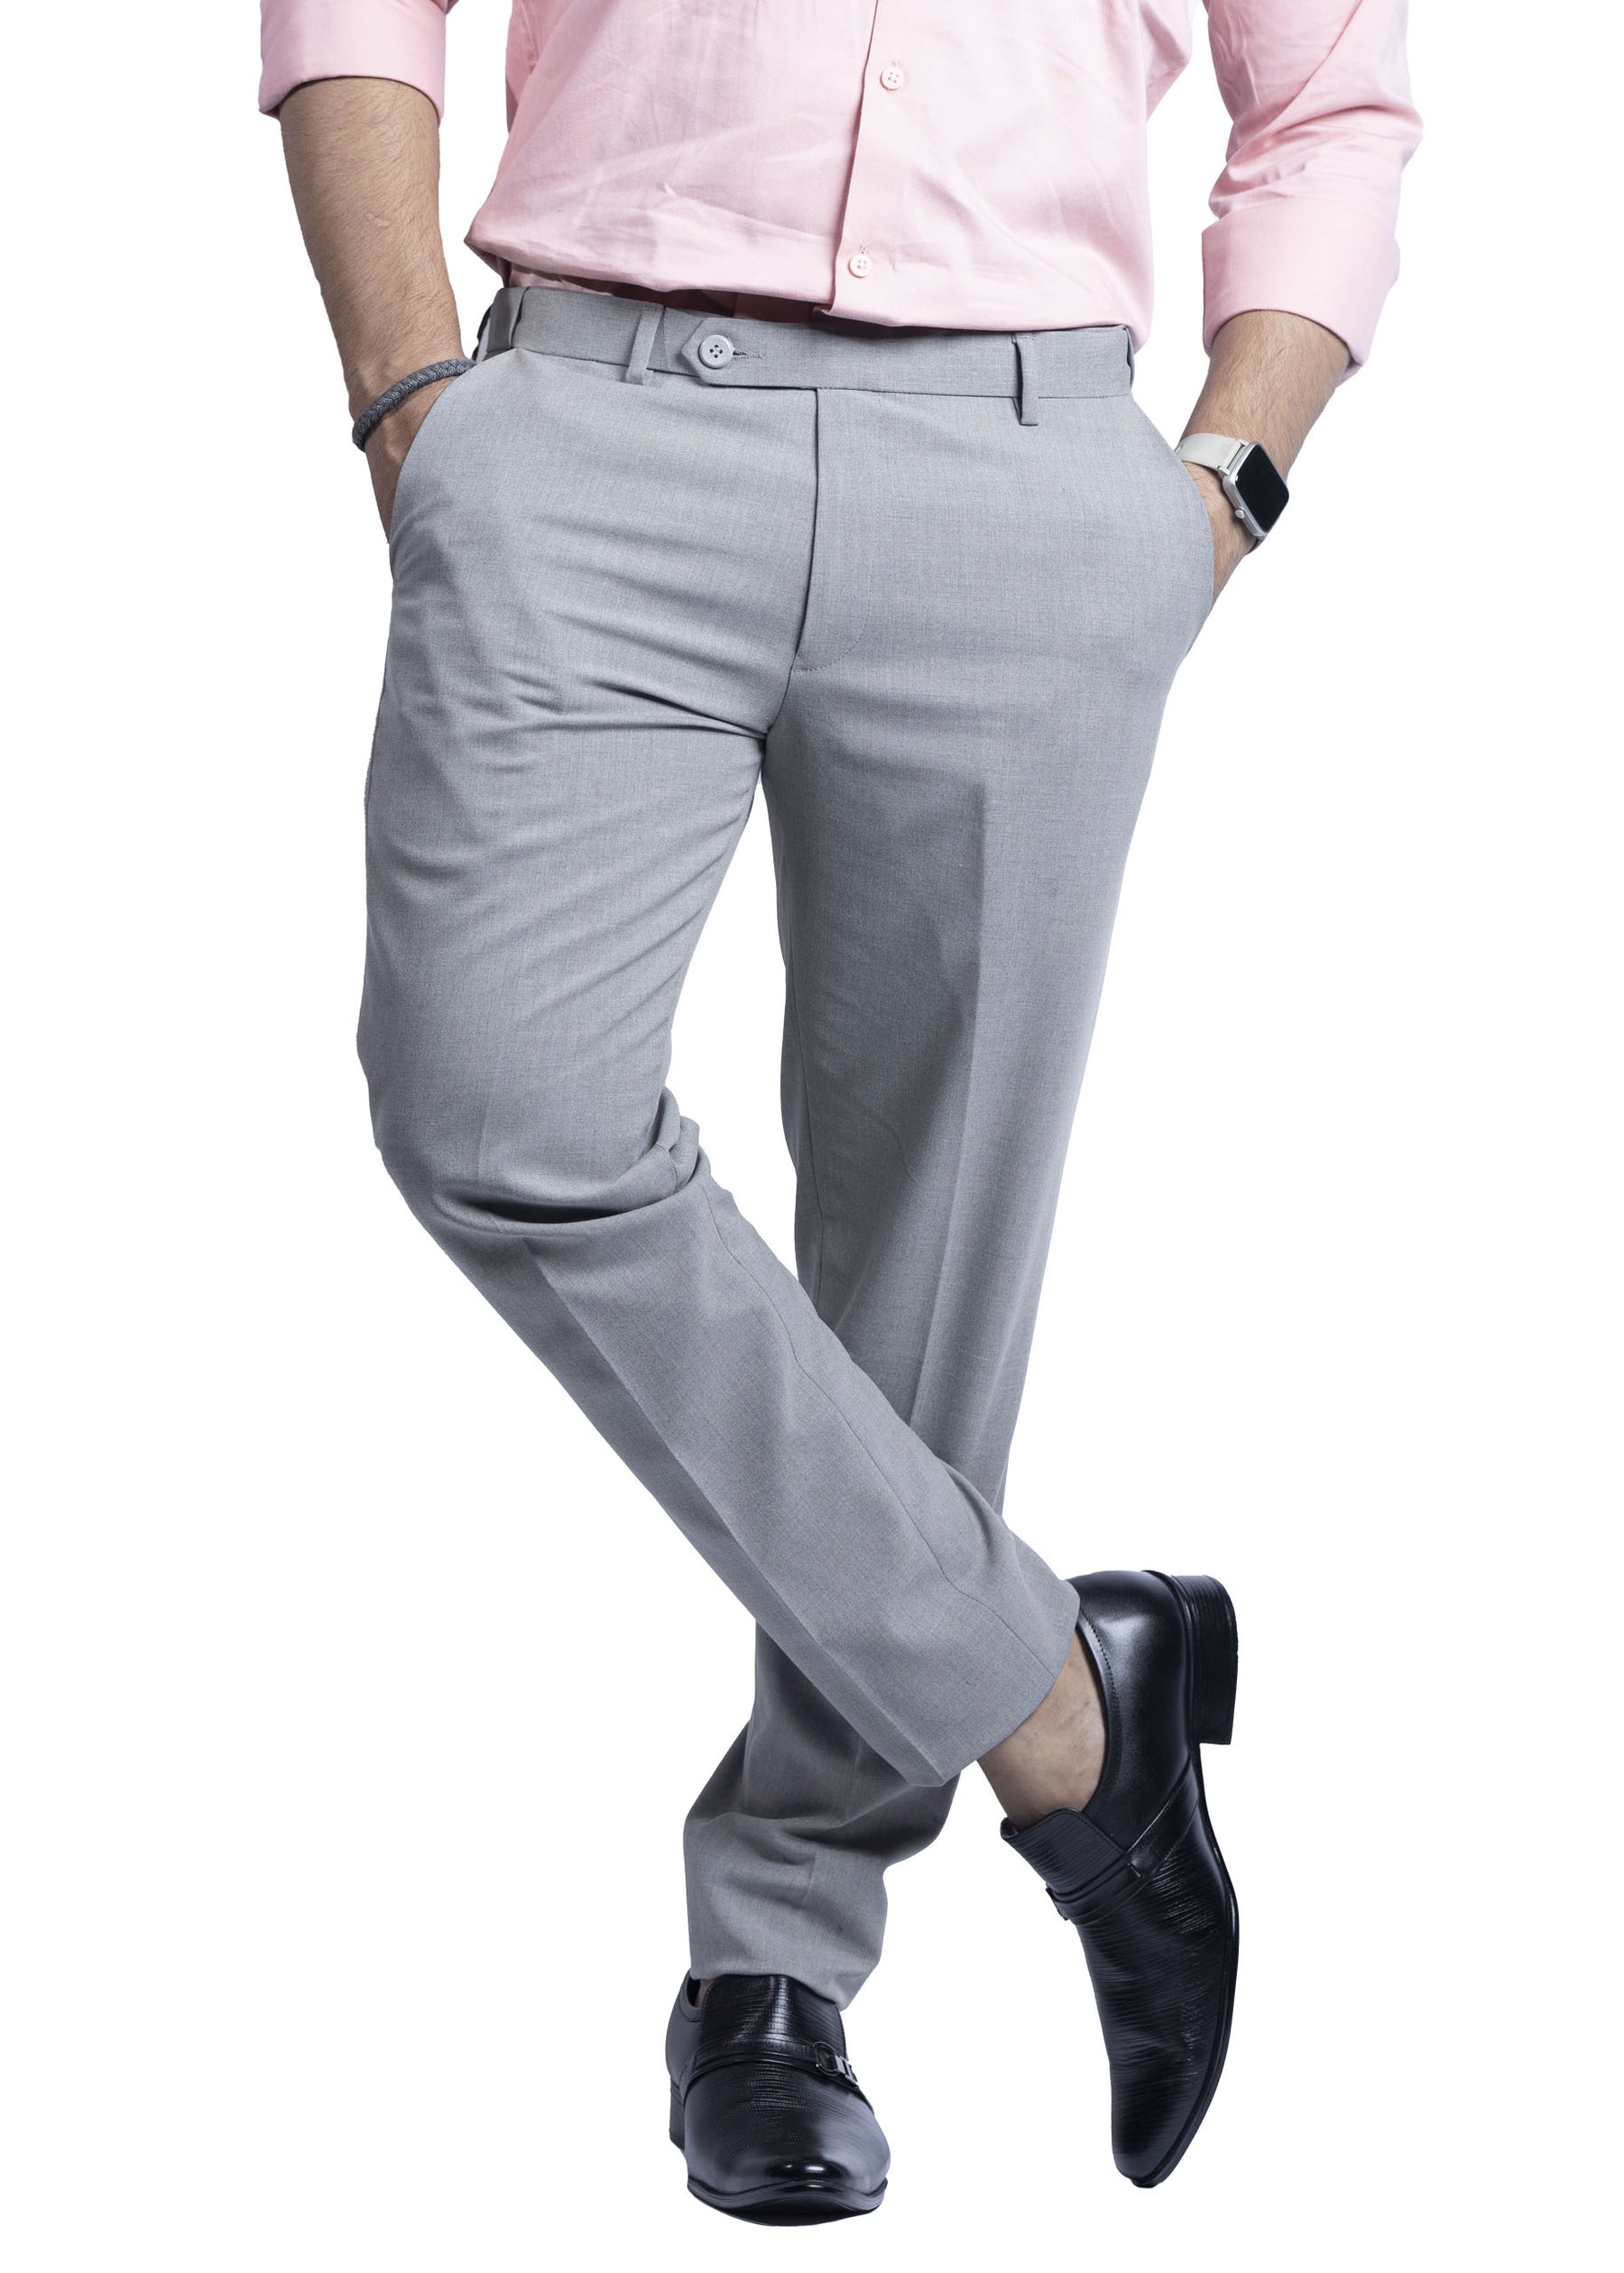 Womens Active Lite Golf Trousers- Khaki Cream (Flexi-Waist) - styzen.in